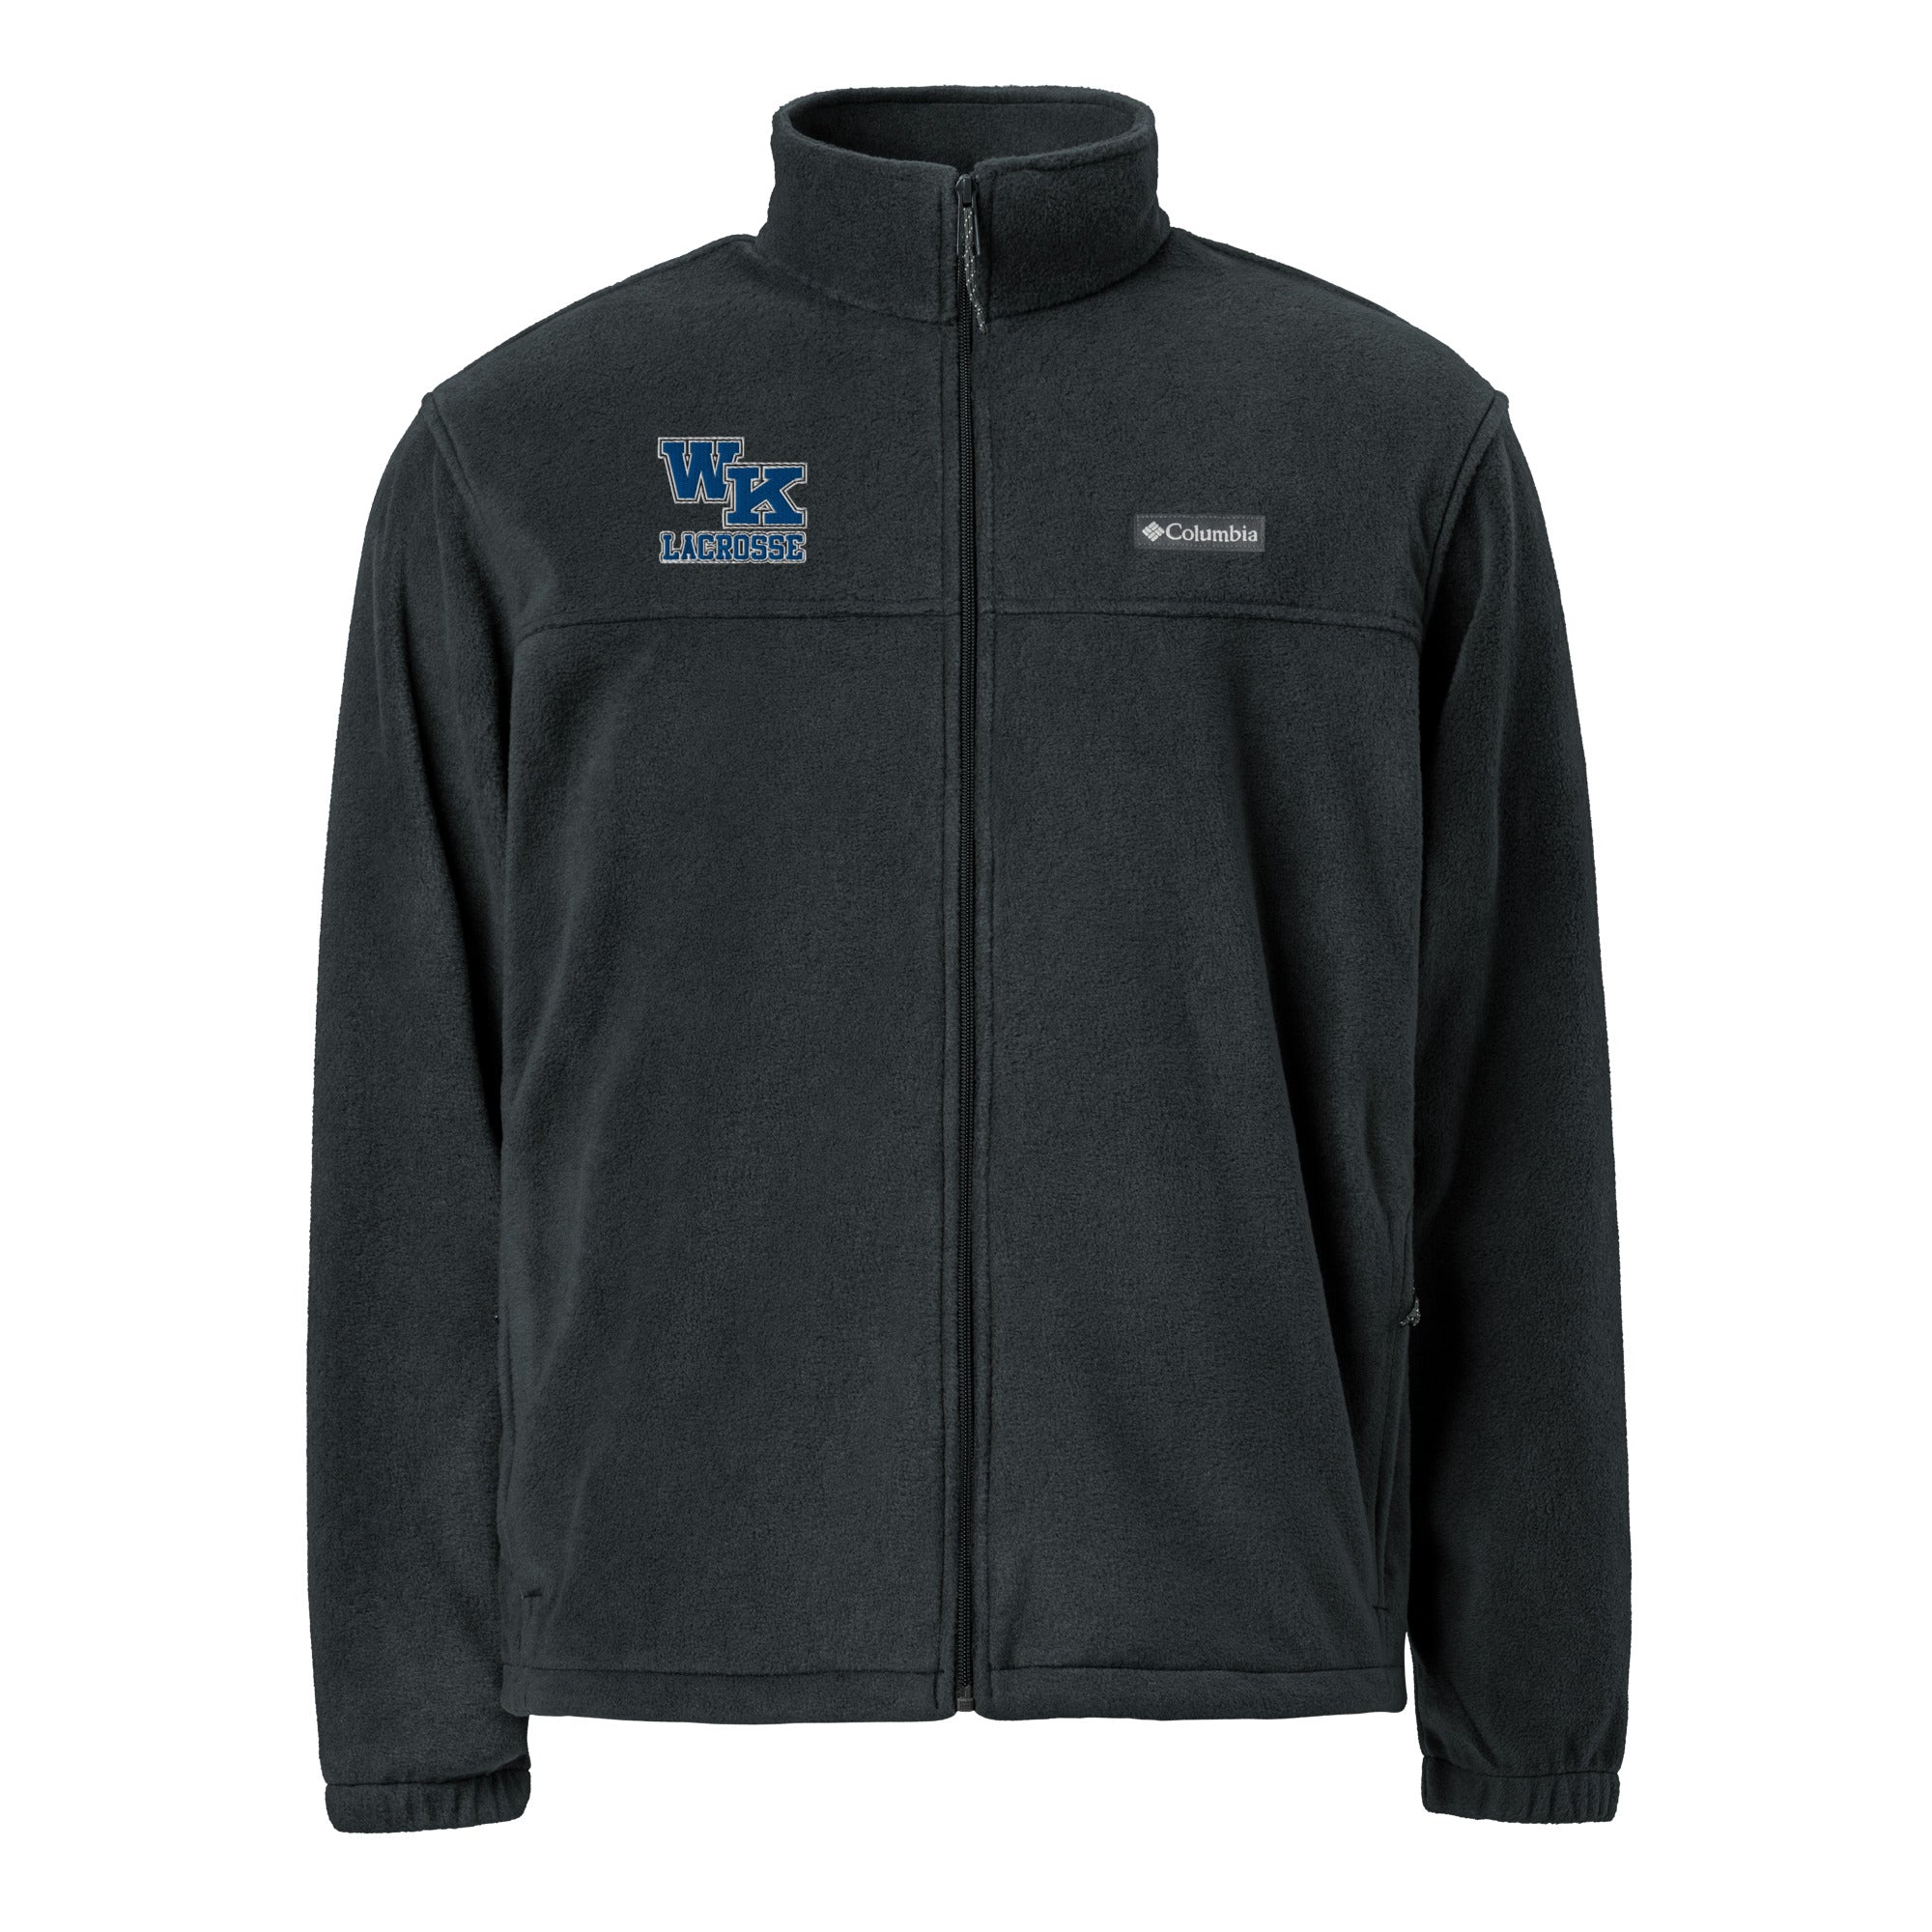 WK Unisex Columbia fleece jacket